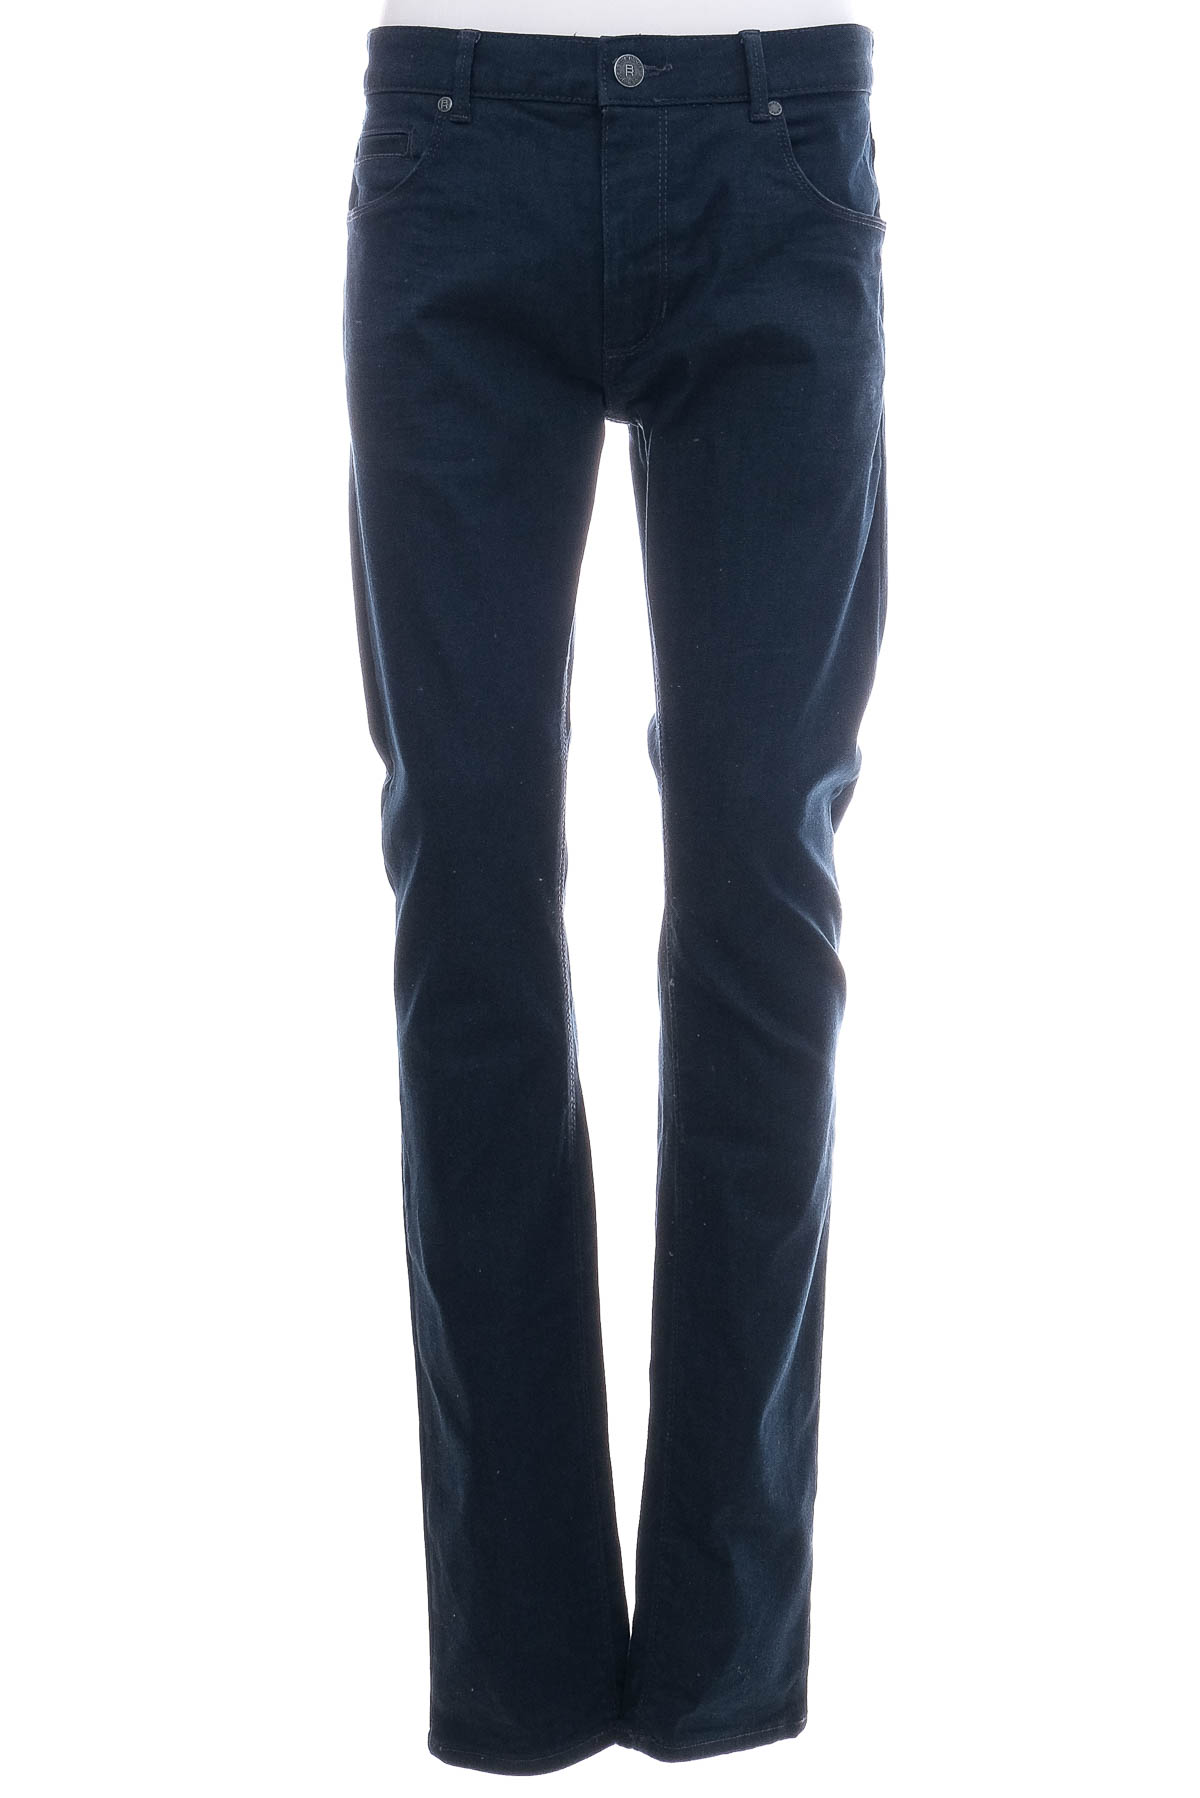 Jeans pentru bărbăți - Blue Ridge - 0